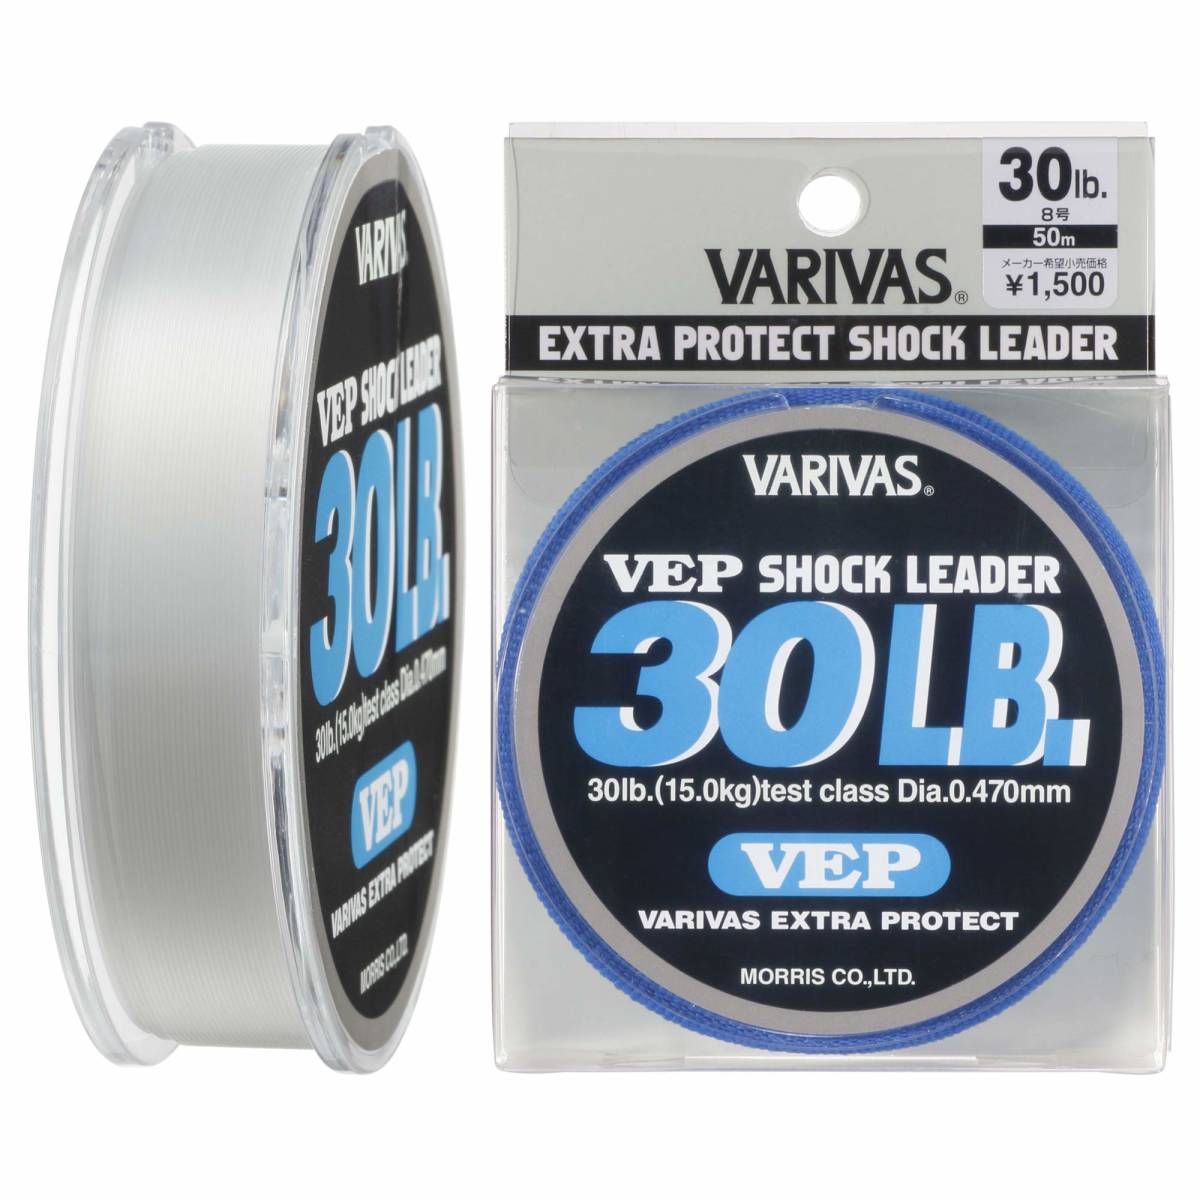 【特価セール】50m ナイロン VEP ショックリーダー VARIVAS(バリバス)の画像1